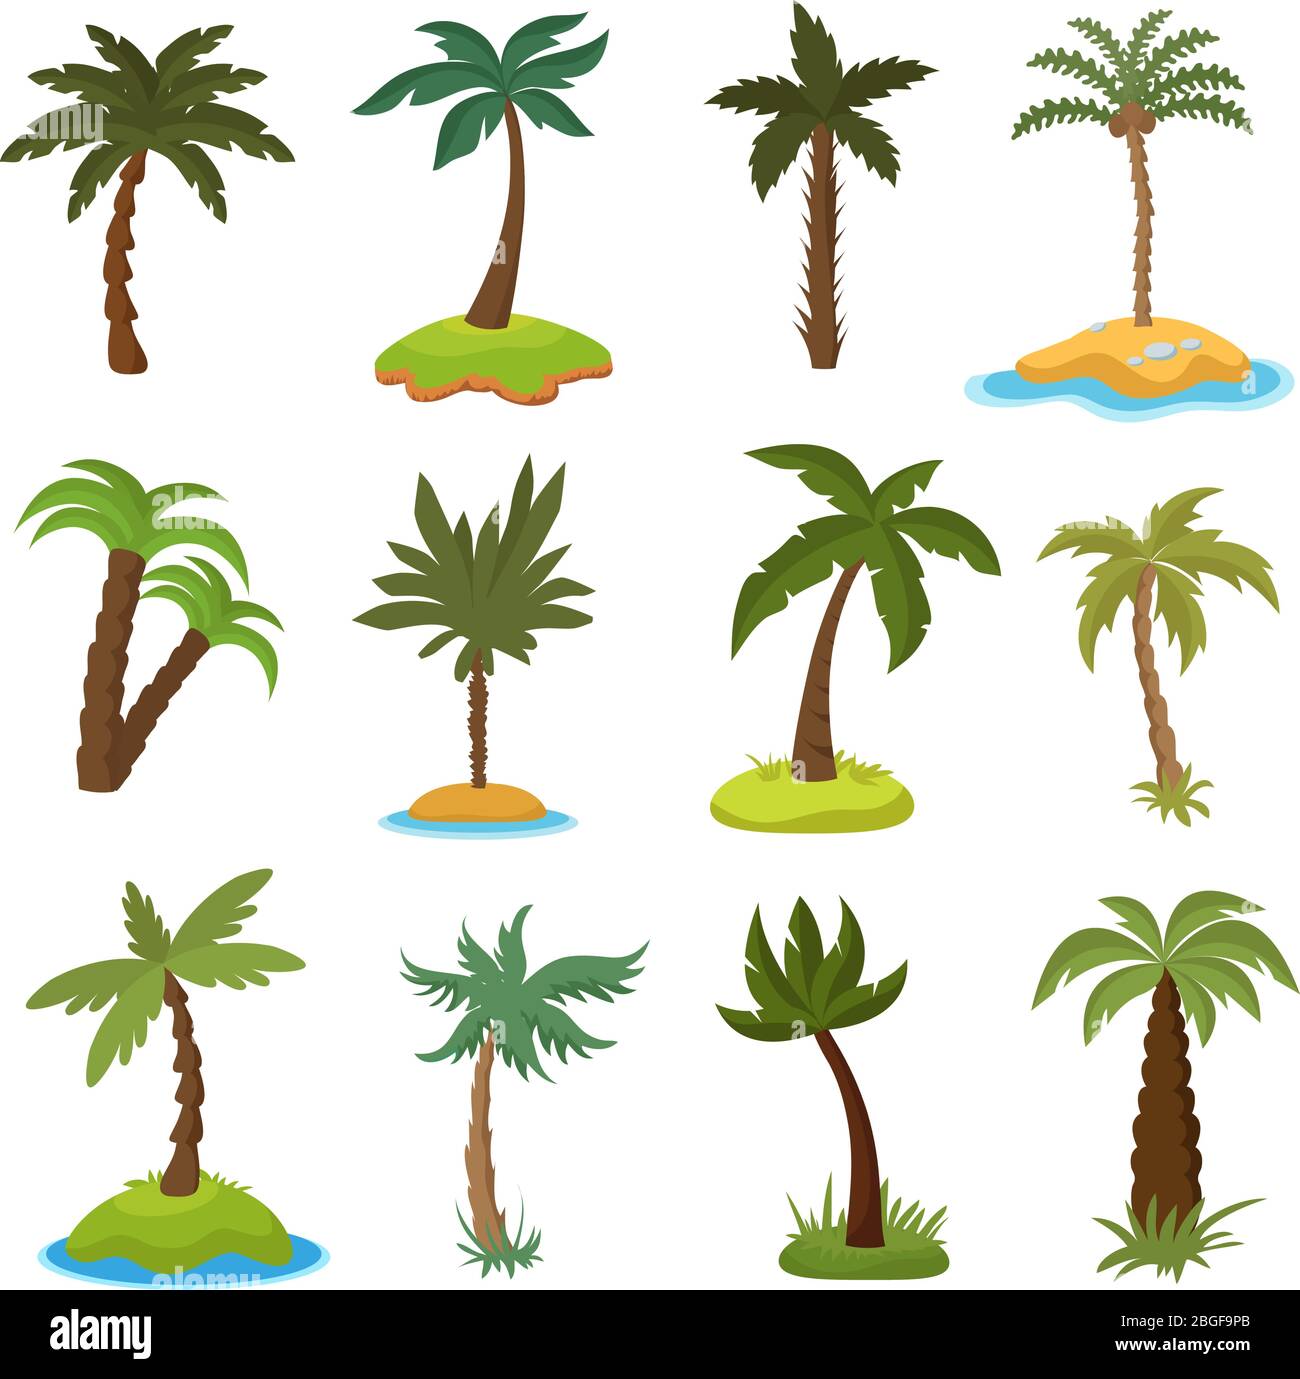 Cartoni animati di palme su isole tropicali esotiche vettore set. Illustrazione dell'isola con la collezione di palme verdi Illustrazione Vettoriale